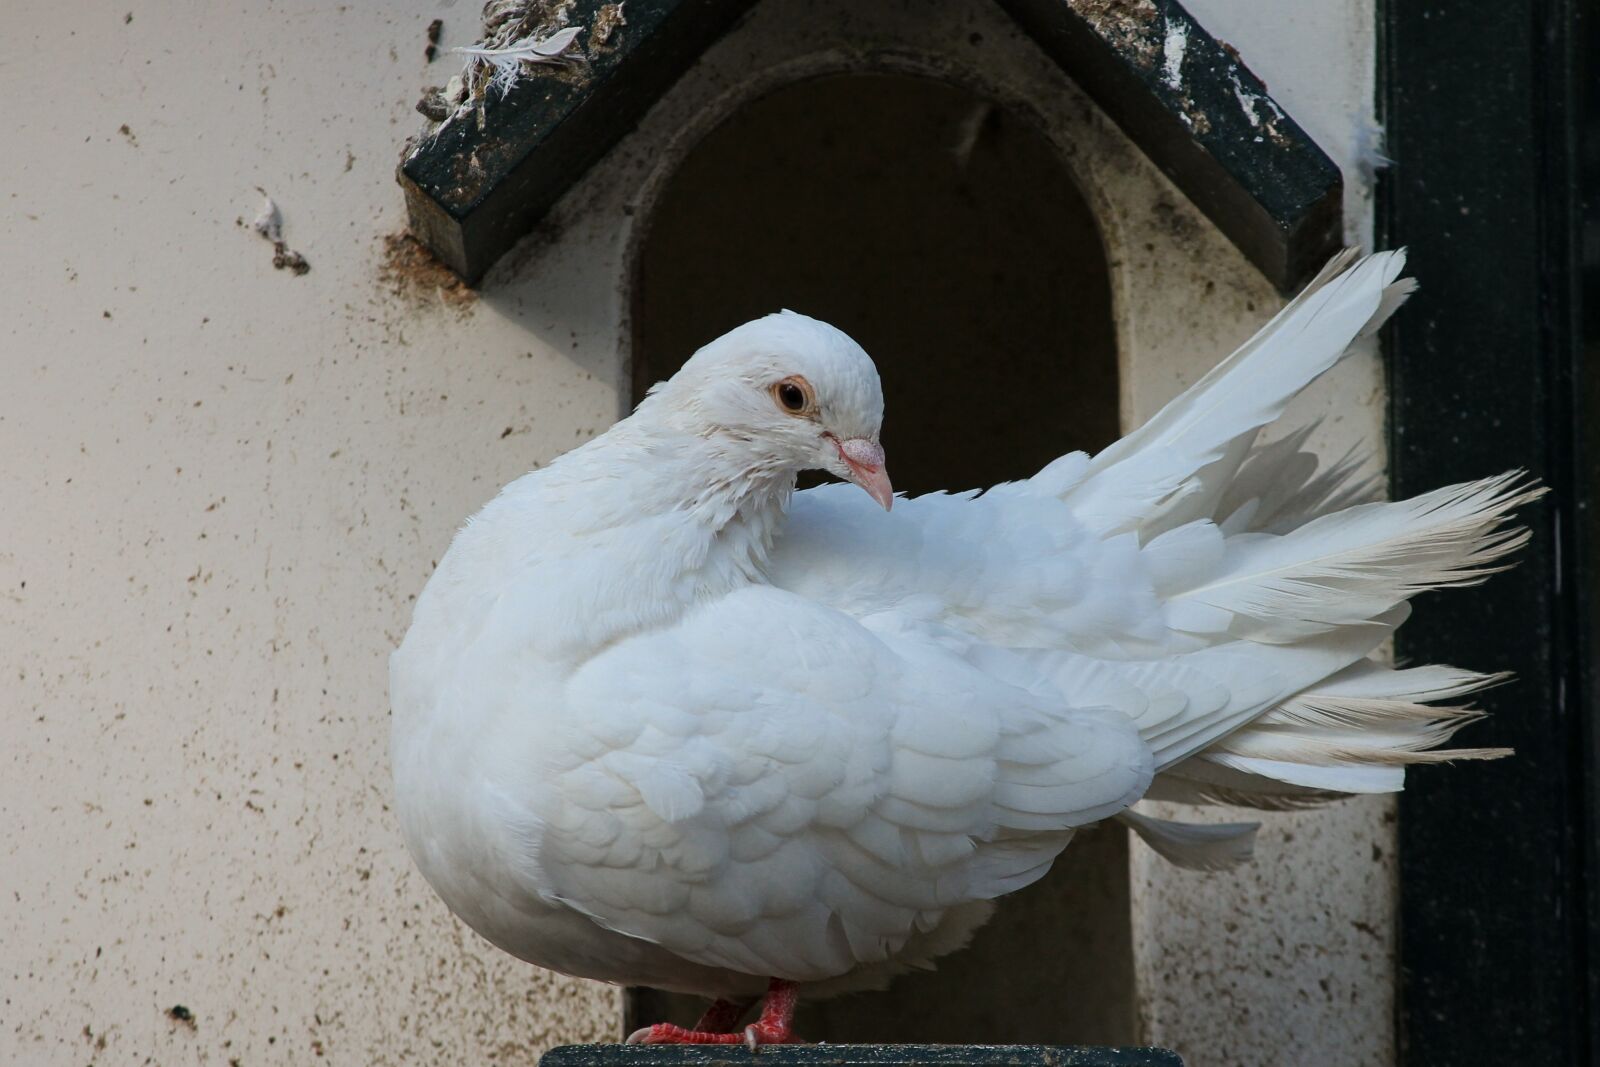 Canon EOS 1100D (EOS Rebel T3 / EOS Kiss X50) sample photo. Dove, white, bird photography